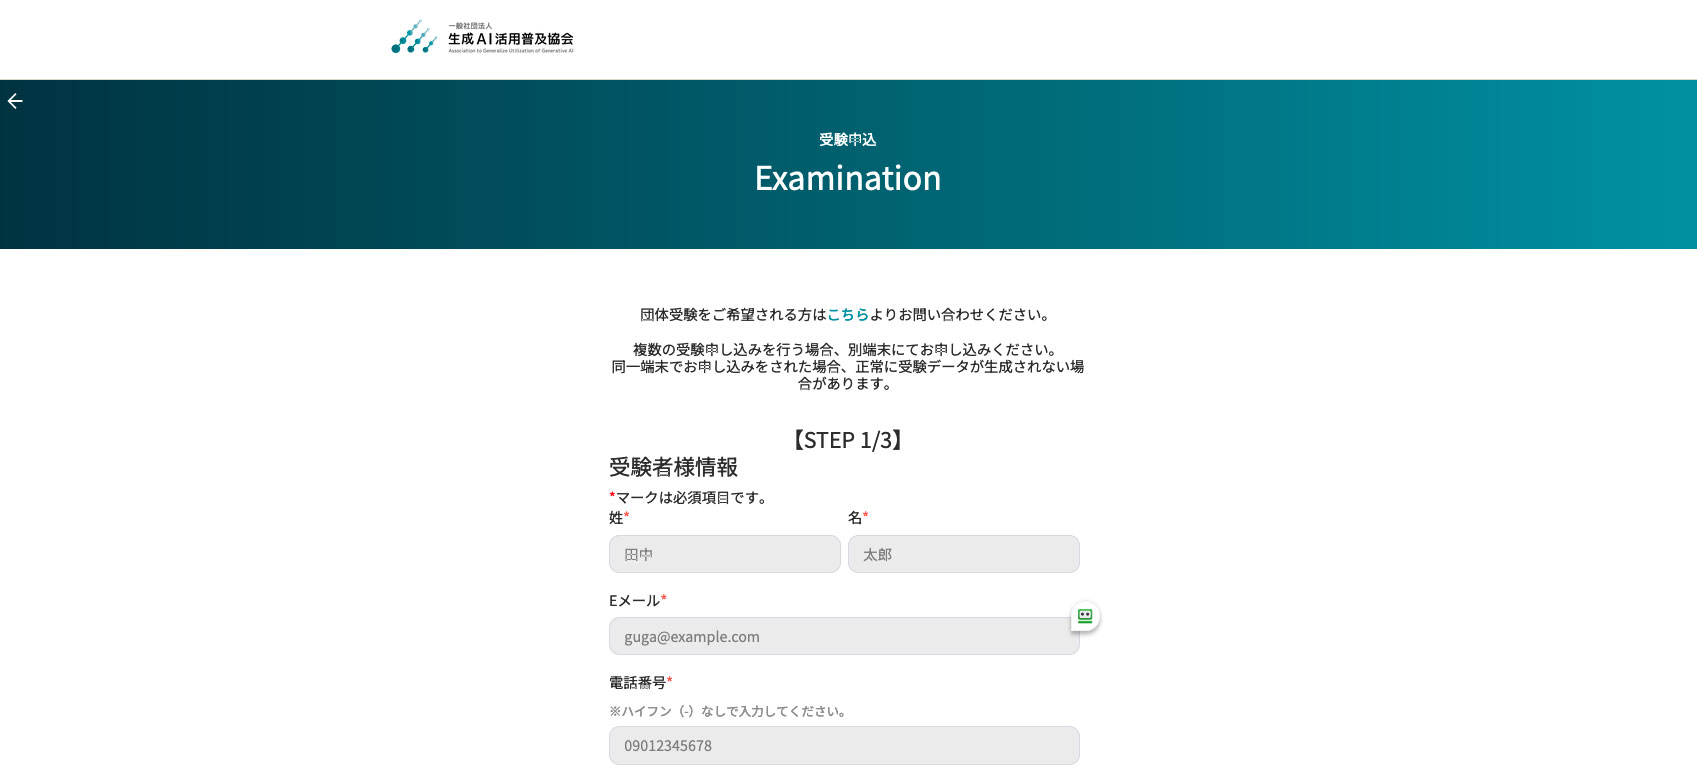 生成AIパスポートの受験申込ページの画像